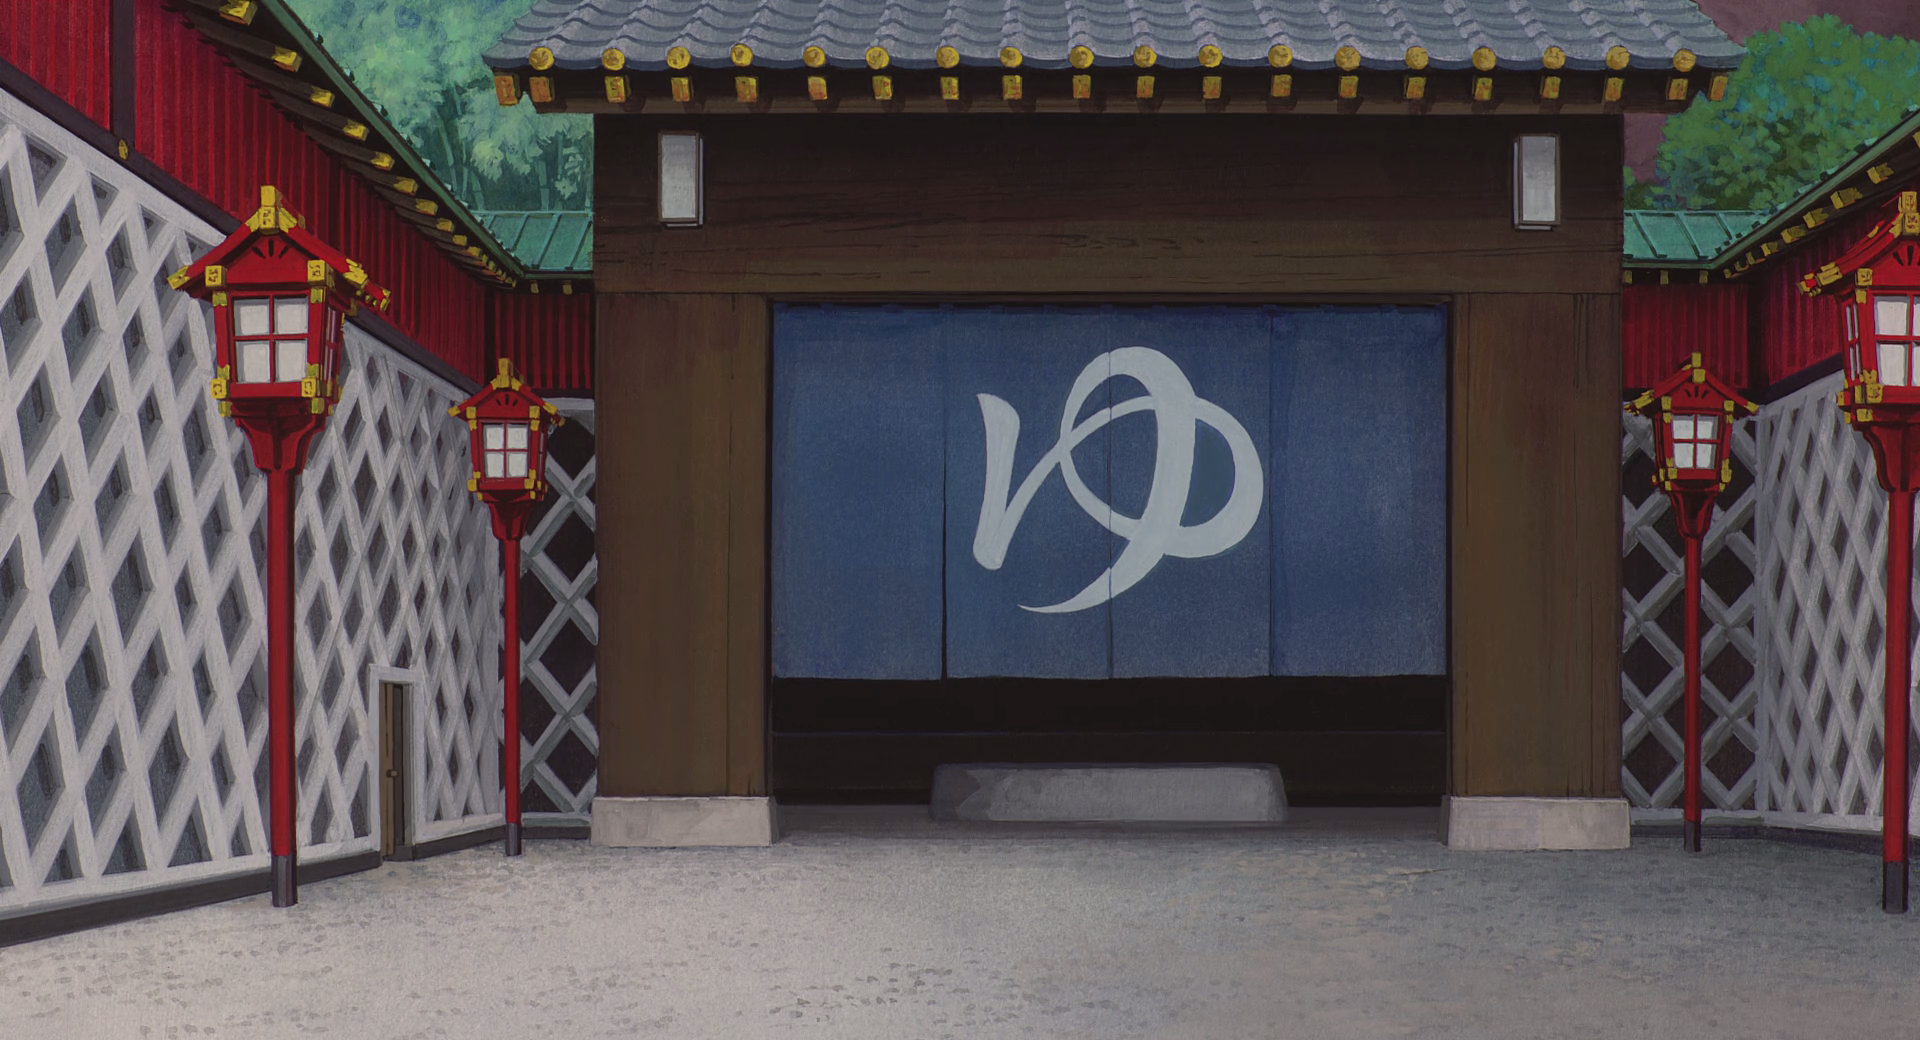 Baixar papel de parede para celular de Anime, A Viagem De Chihiro gratuito.